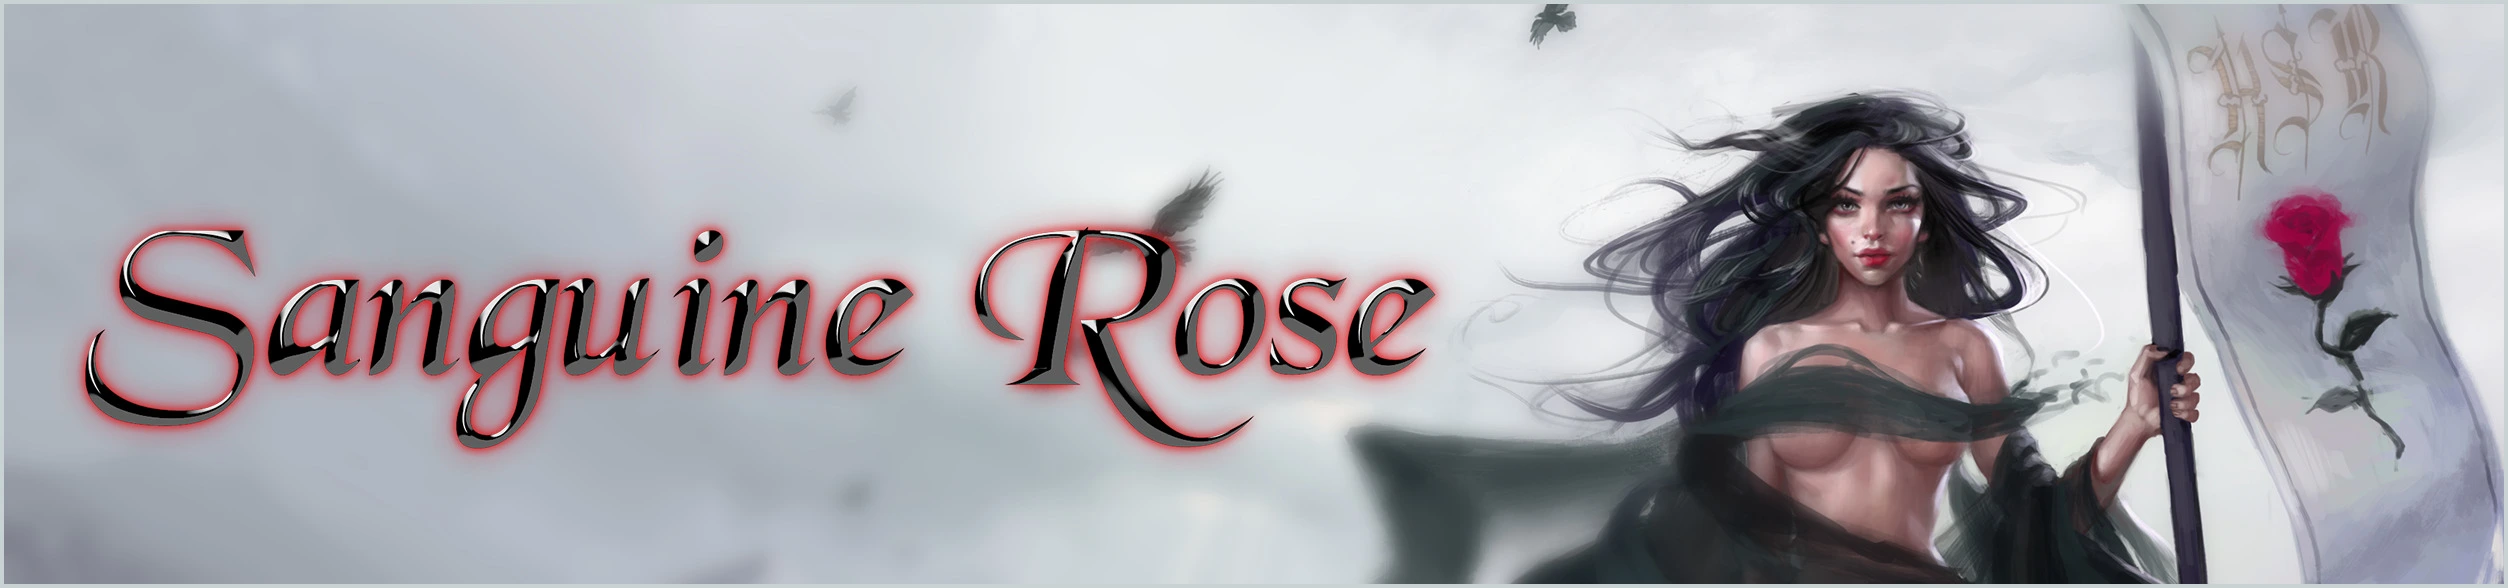 Sanguine Rose [v3.6.0] main image